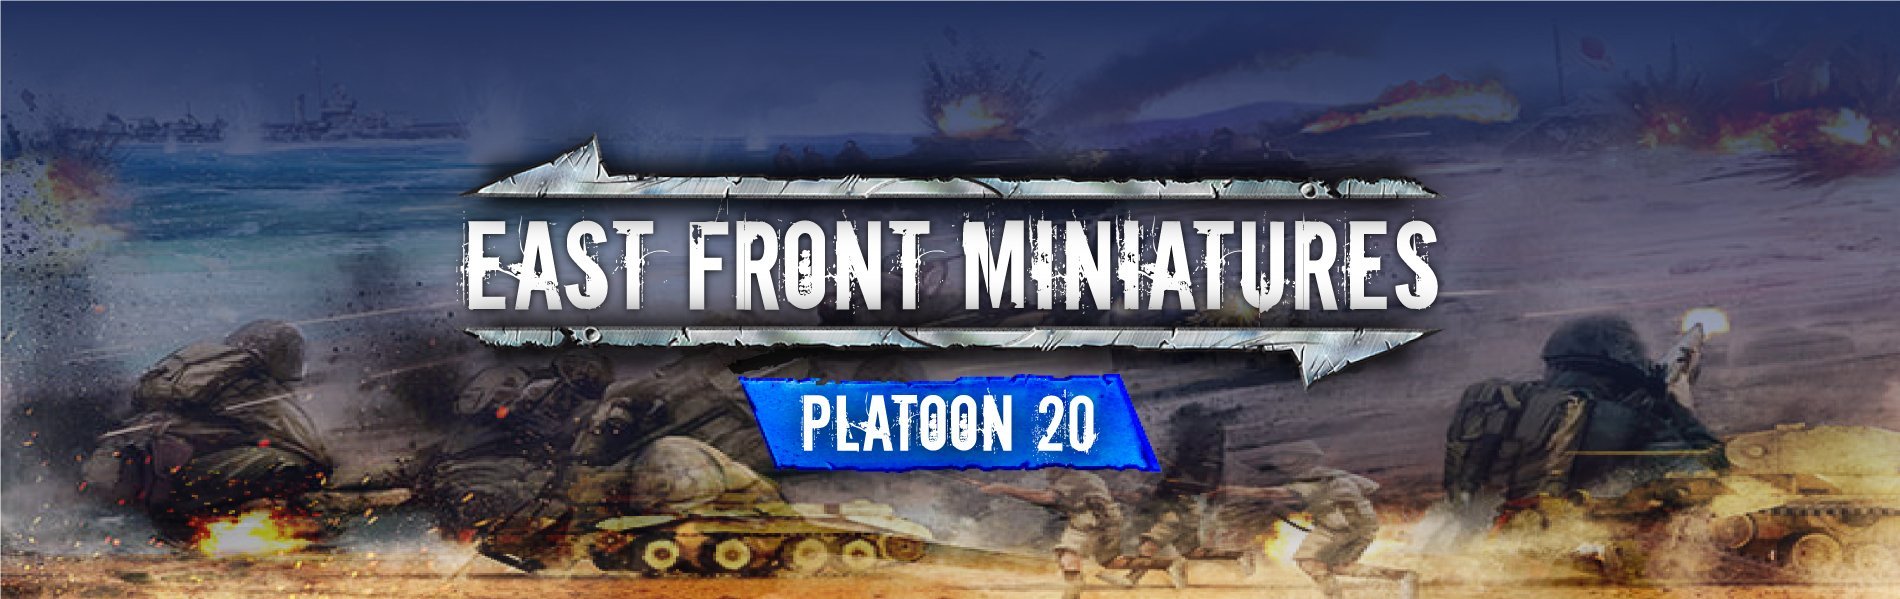 Platoon 20 News